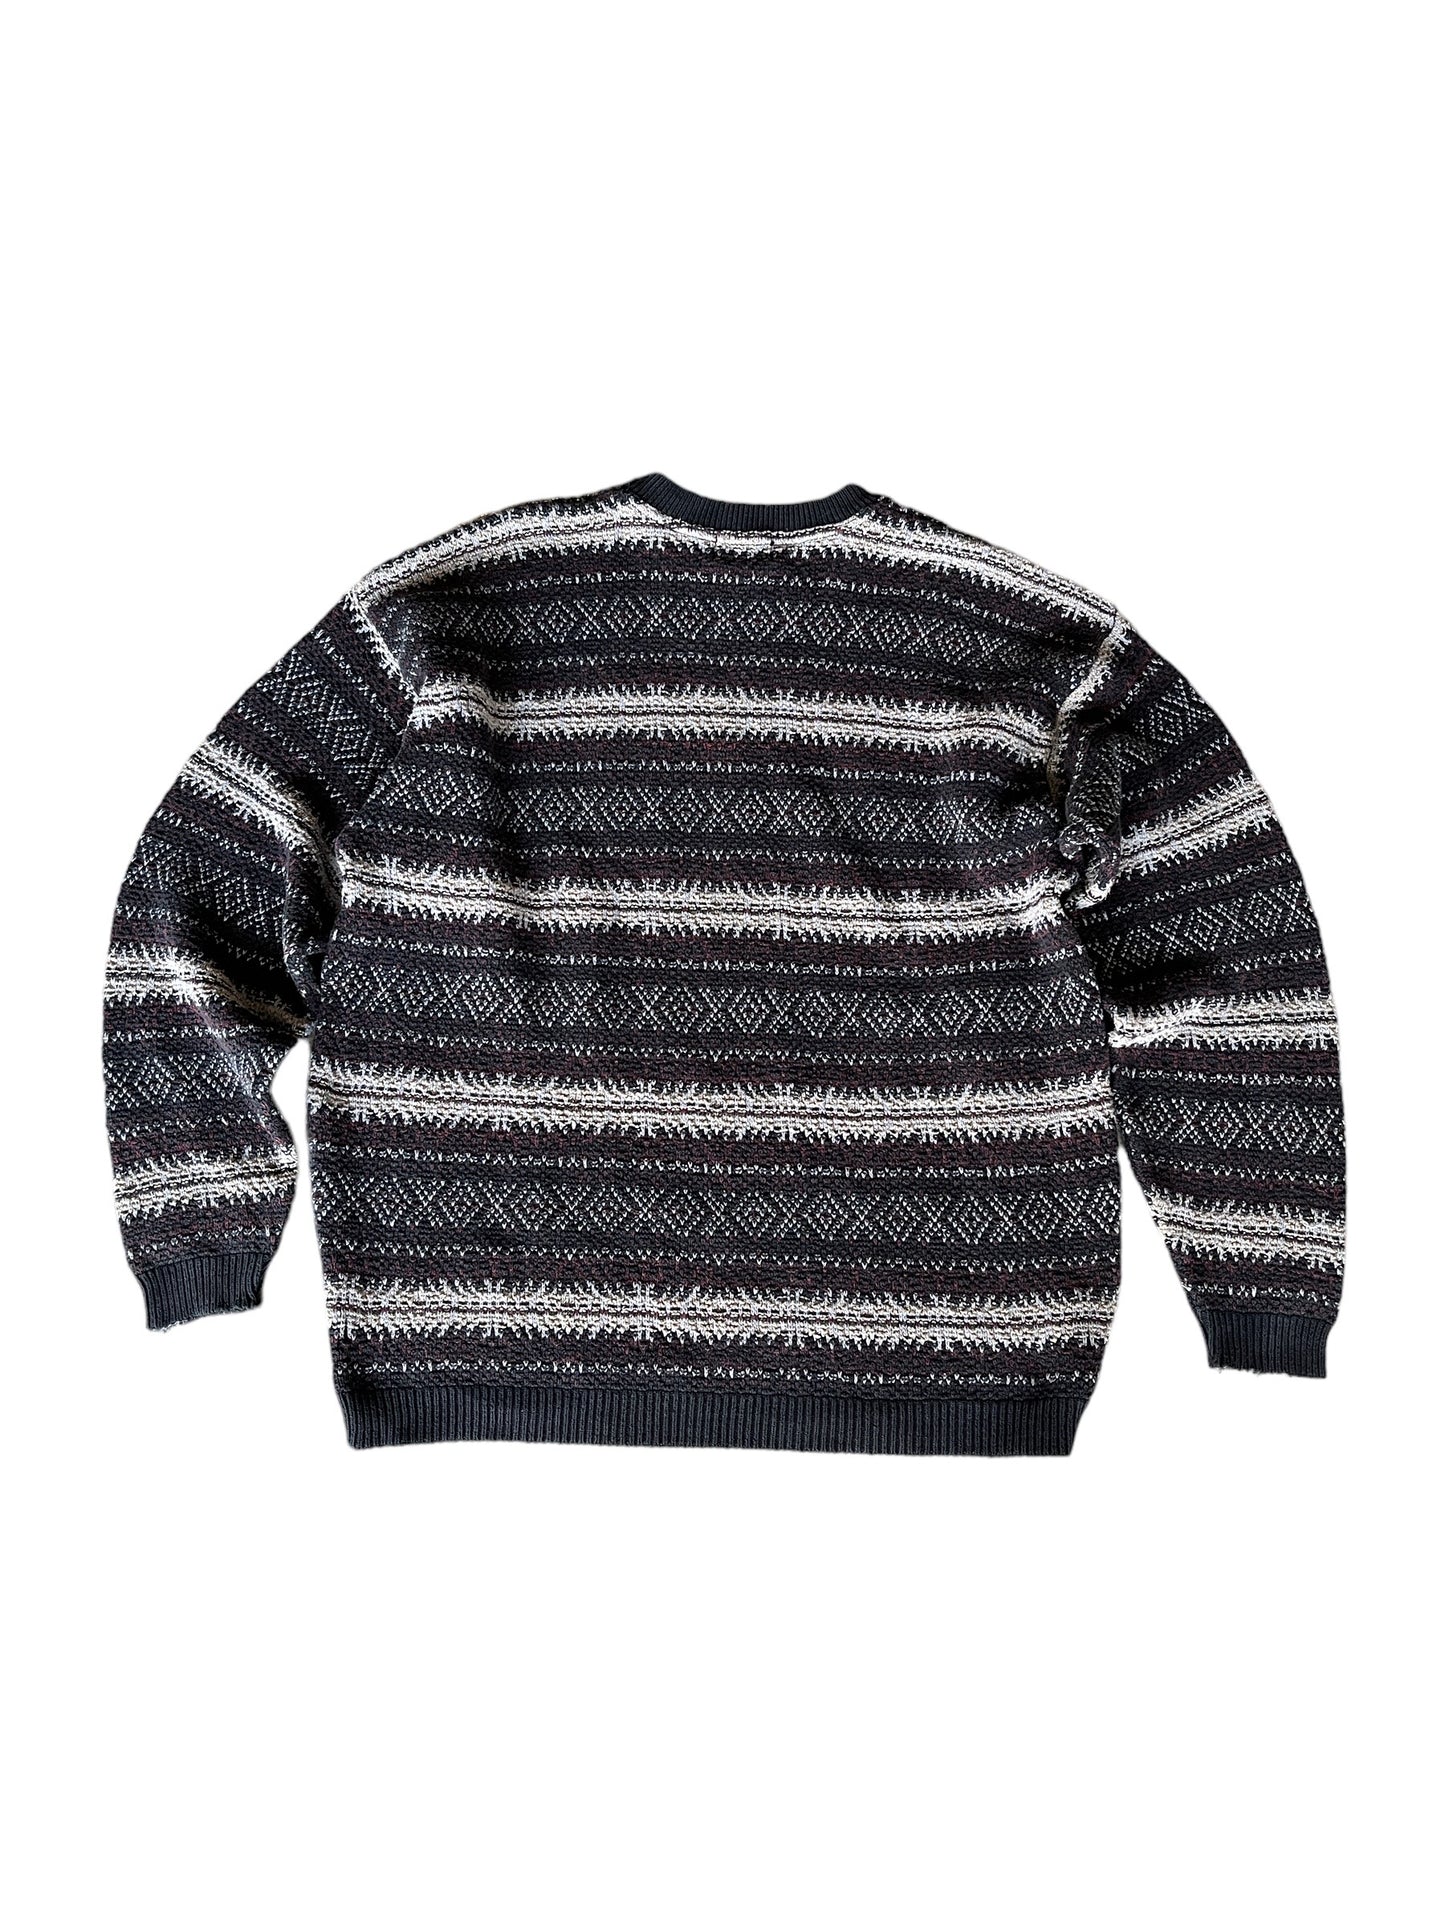 Vintage "TT & Co" Sweater